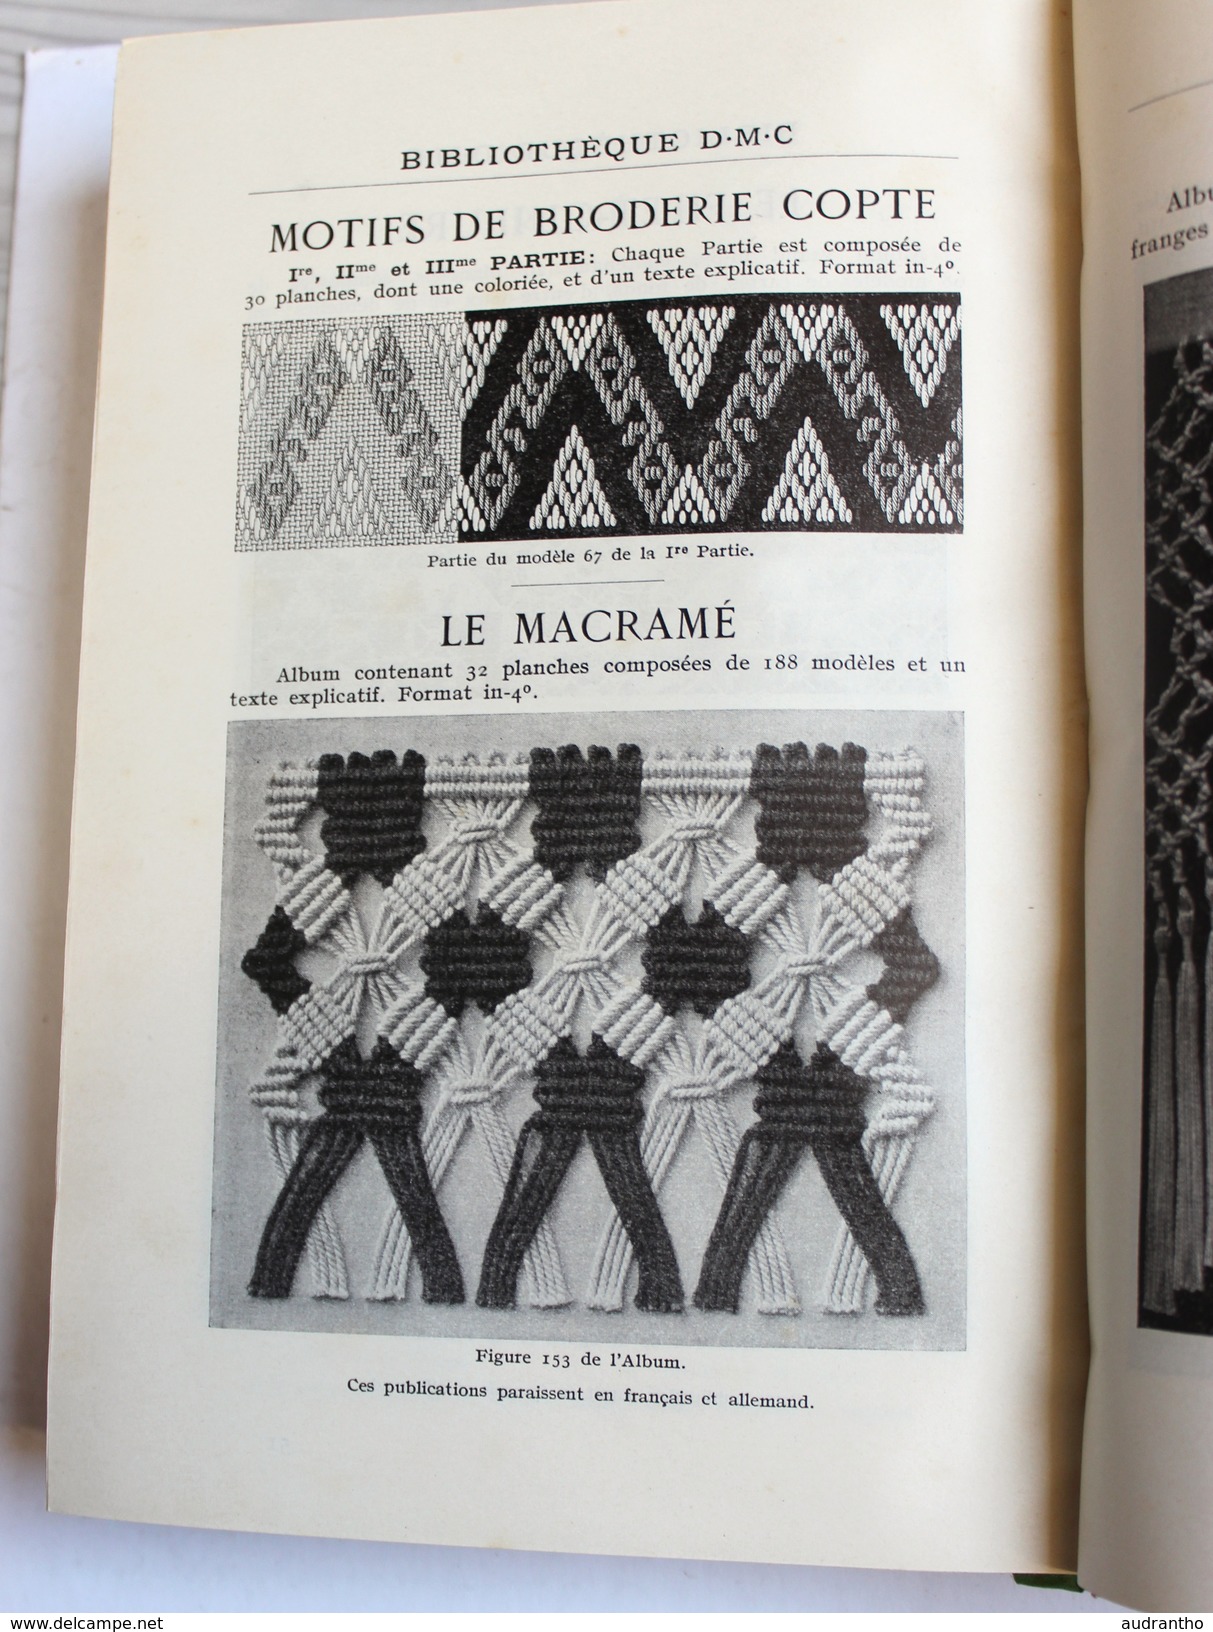 rare Encyclopédie des Ouvrages de Dames Thérèse de Dillmont DMC couture broderie prix certificat d'études 1942